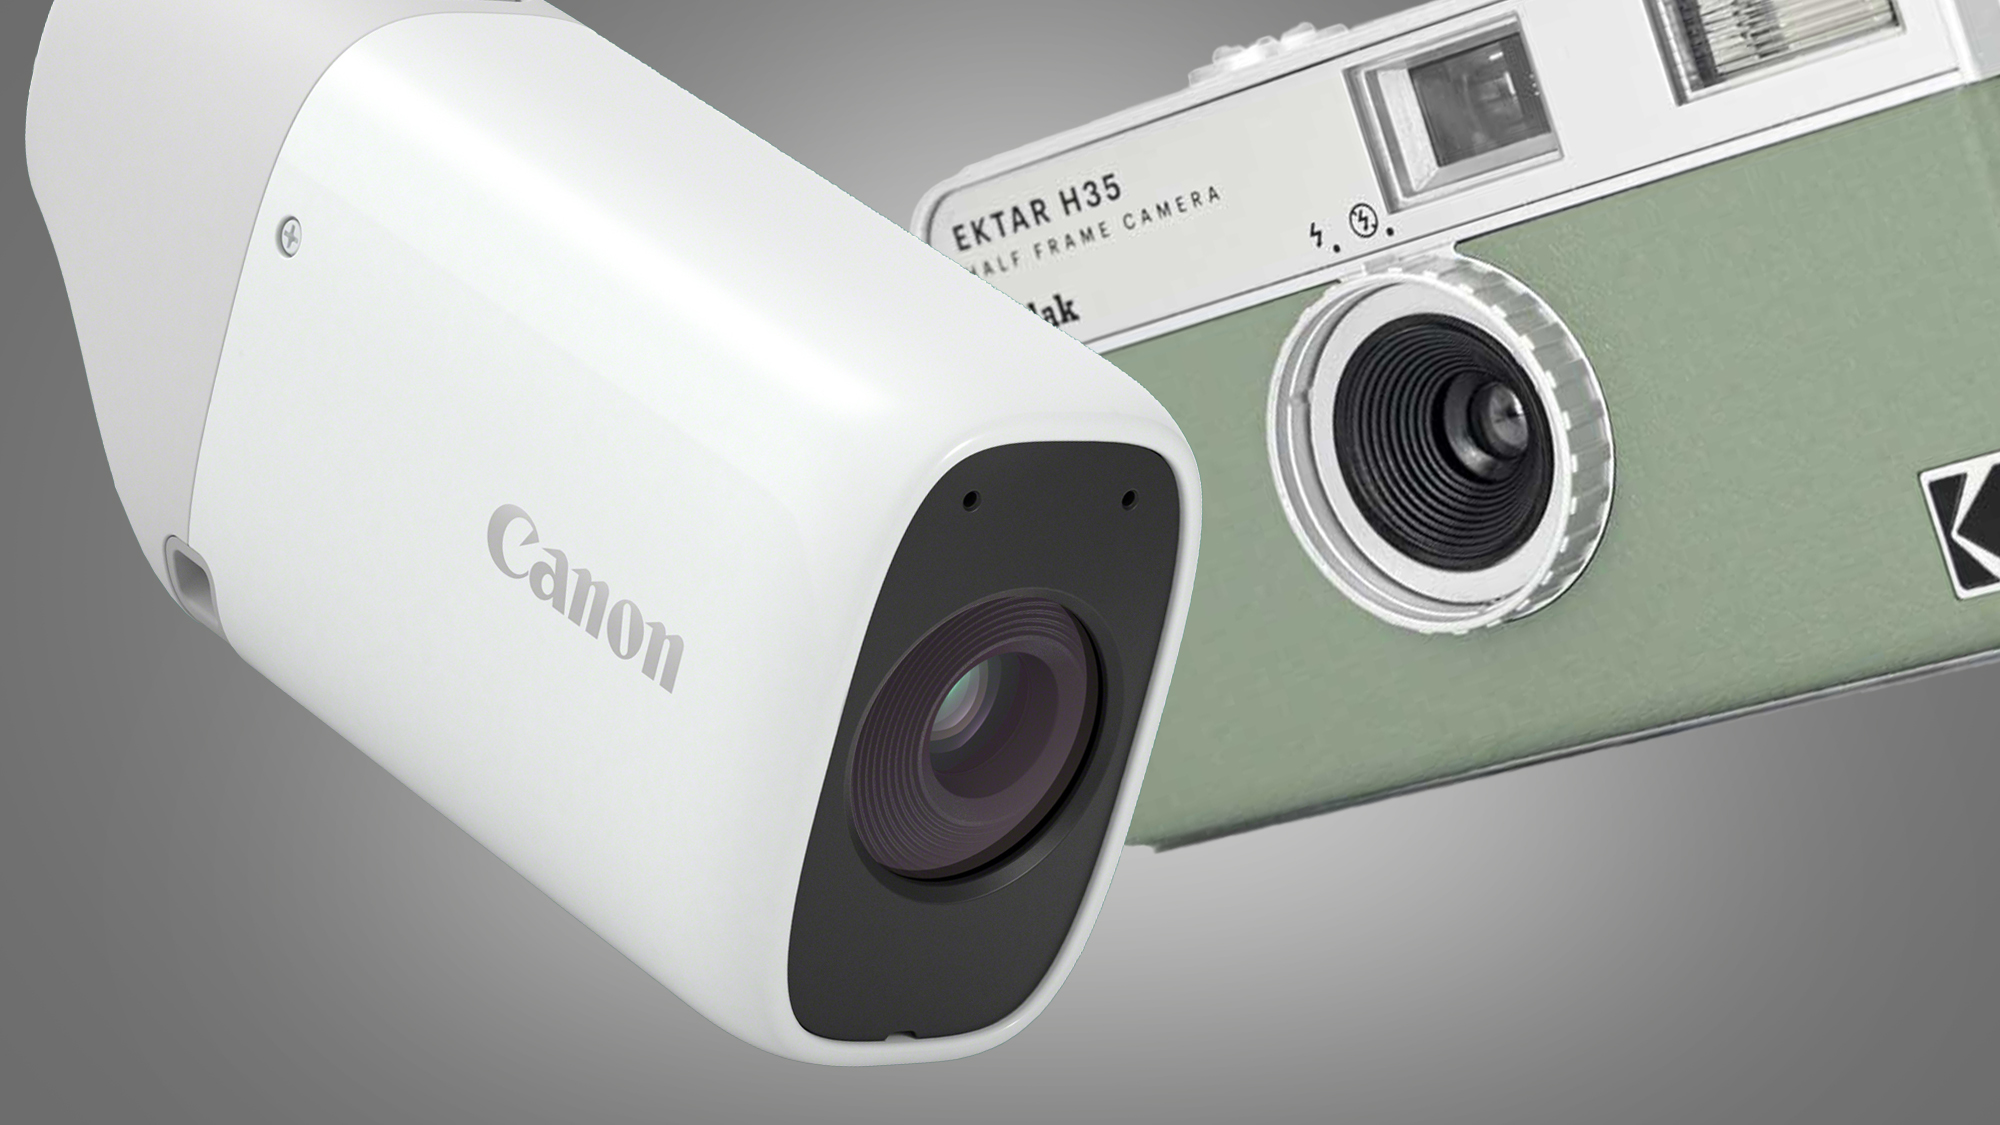 Компактные камеры Canon PowerShot Zoom и Kodak Ektar H35 на сером фоне